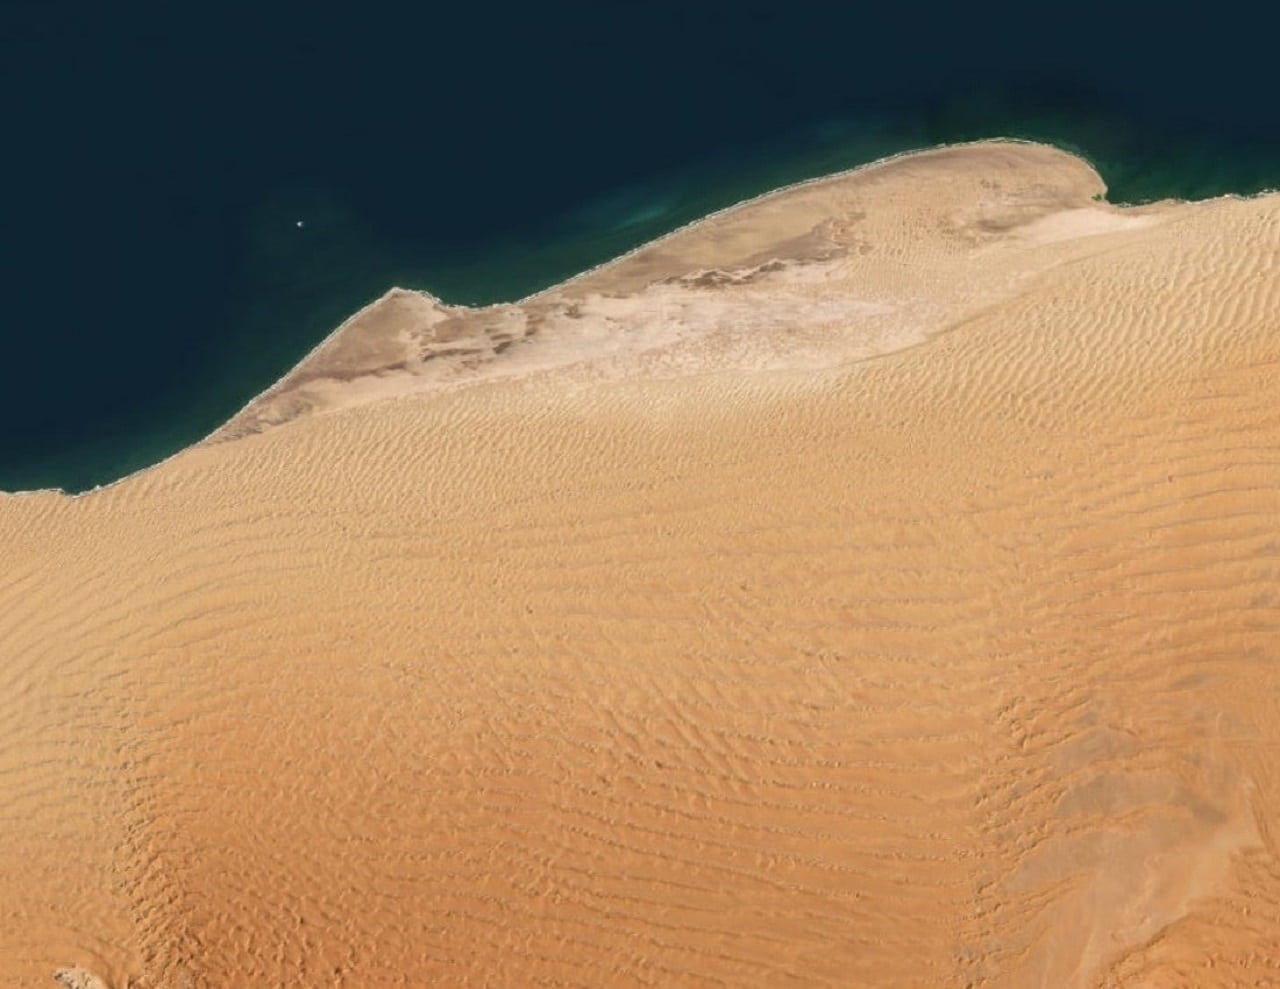 Image showing b namib desert